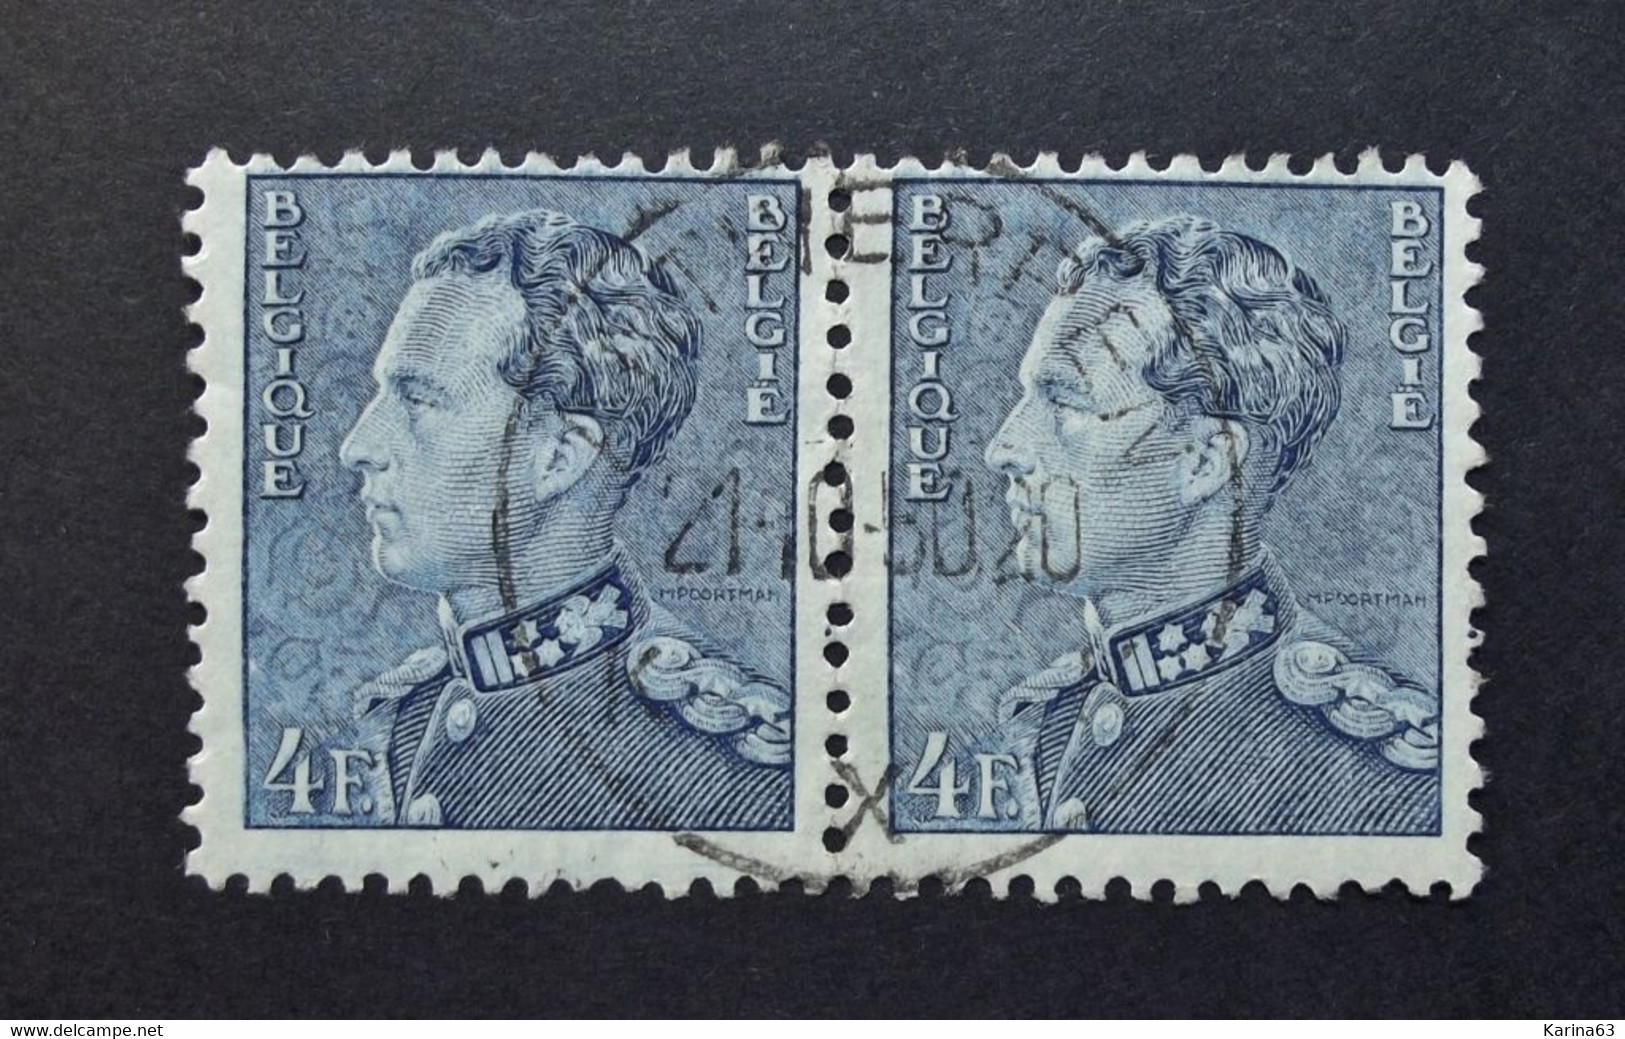 Belgie Belgique - 1950 - OPB/COB  N° 833  (2 Value) - Koning Leopold III  Poortman Obl. -  Antwerpen X . - Usati